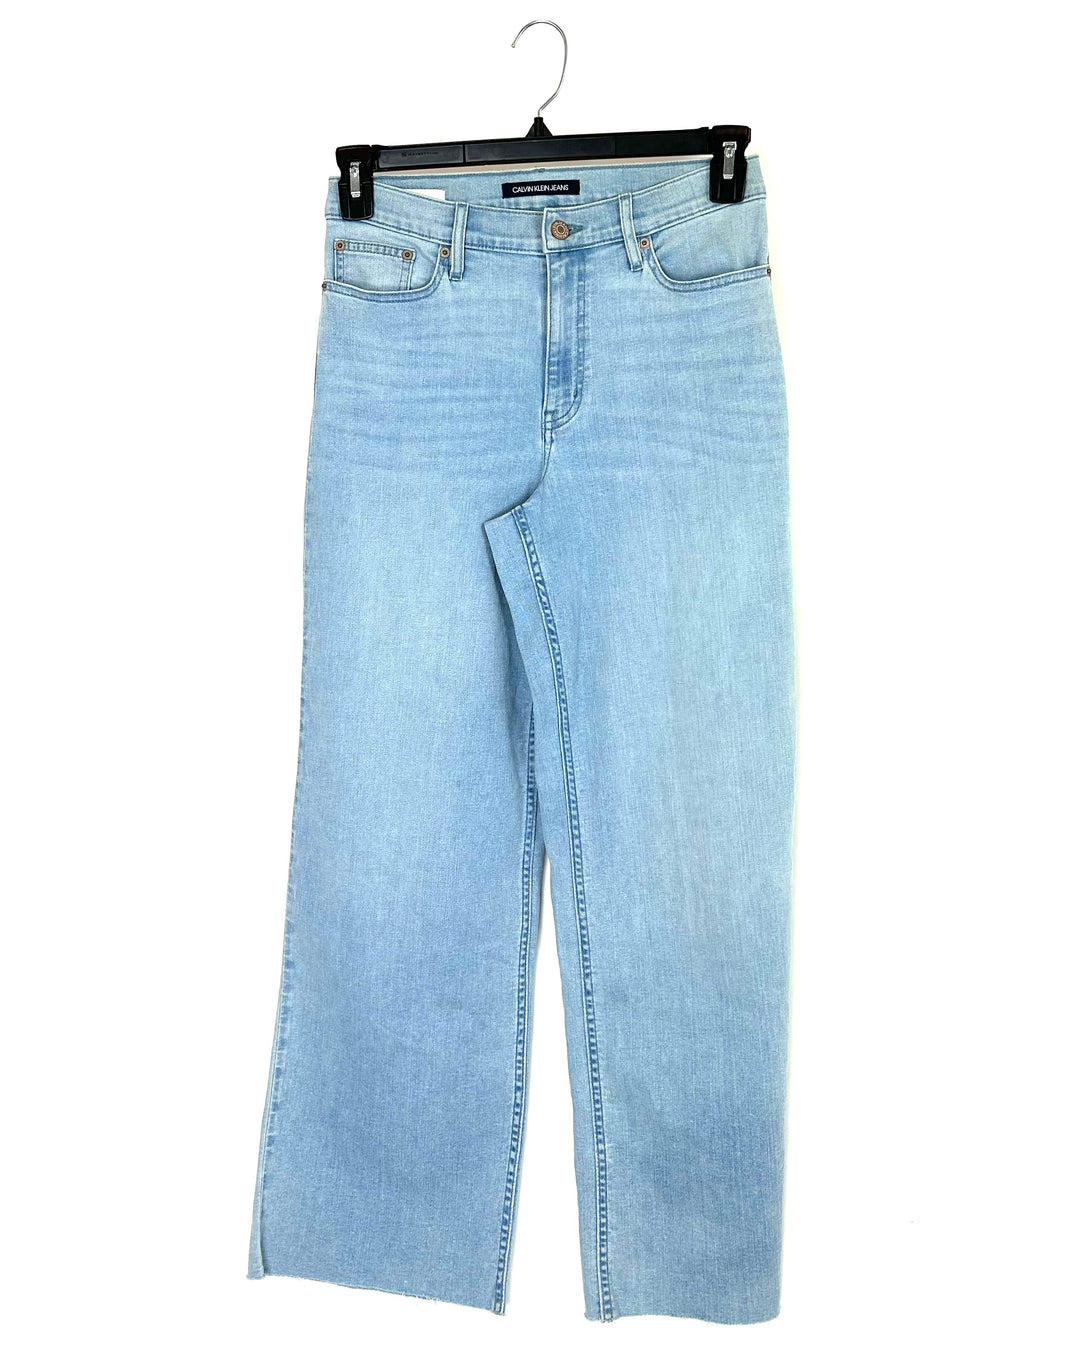 Wide Leg Jeans in Light Blue Wash - Size 28